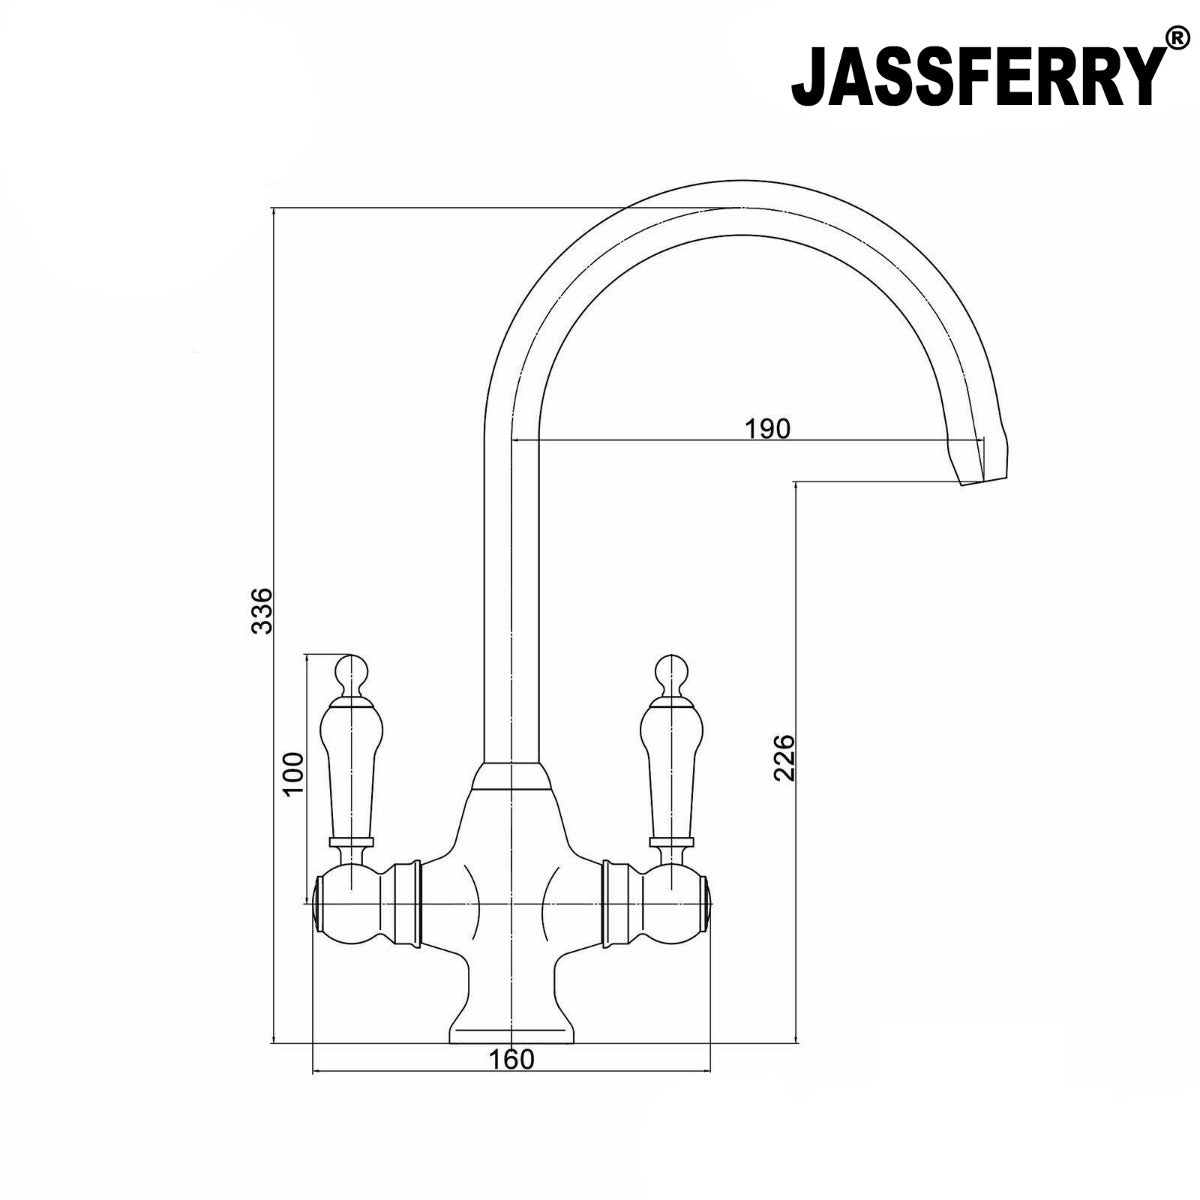 JassferryJASSFERRY Chrome Dual Flow Kitchen Sink Mixer Tap Ceramic Handle Twin LeverKitchen taps